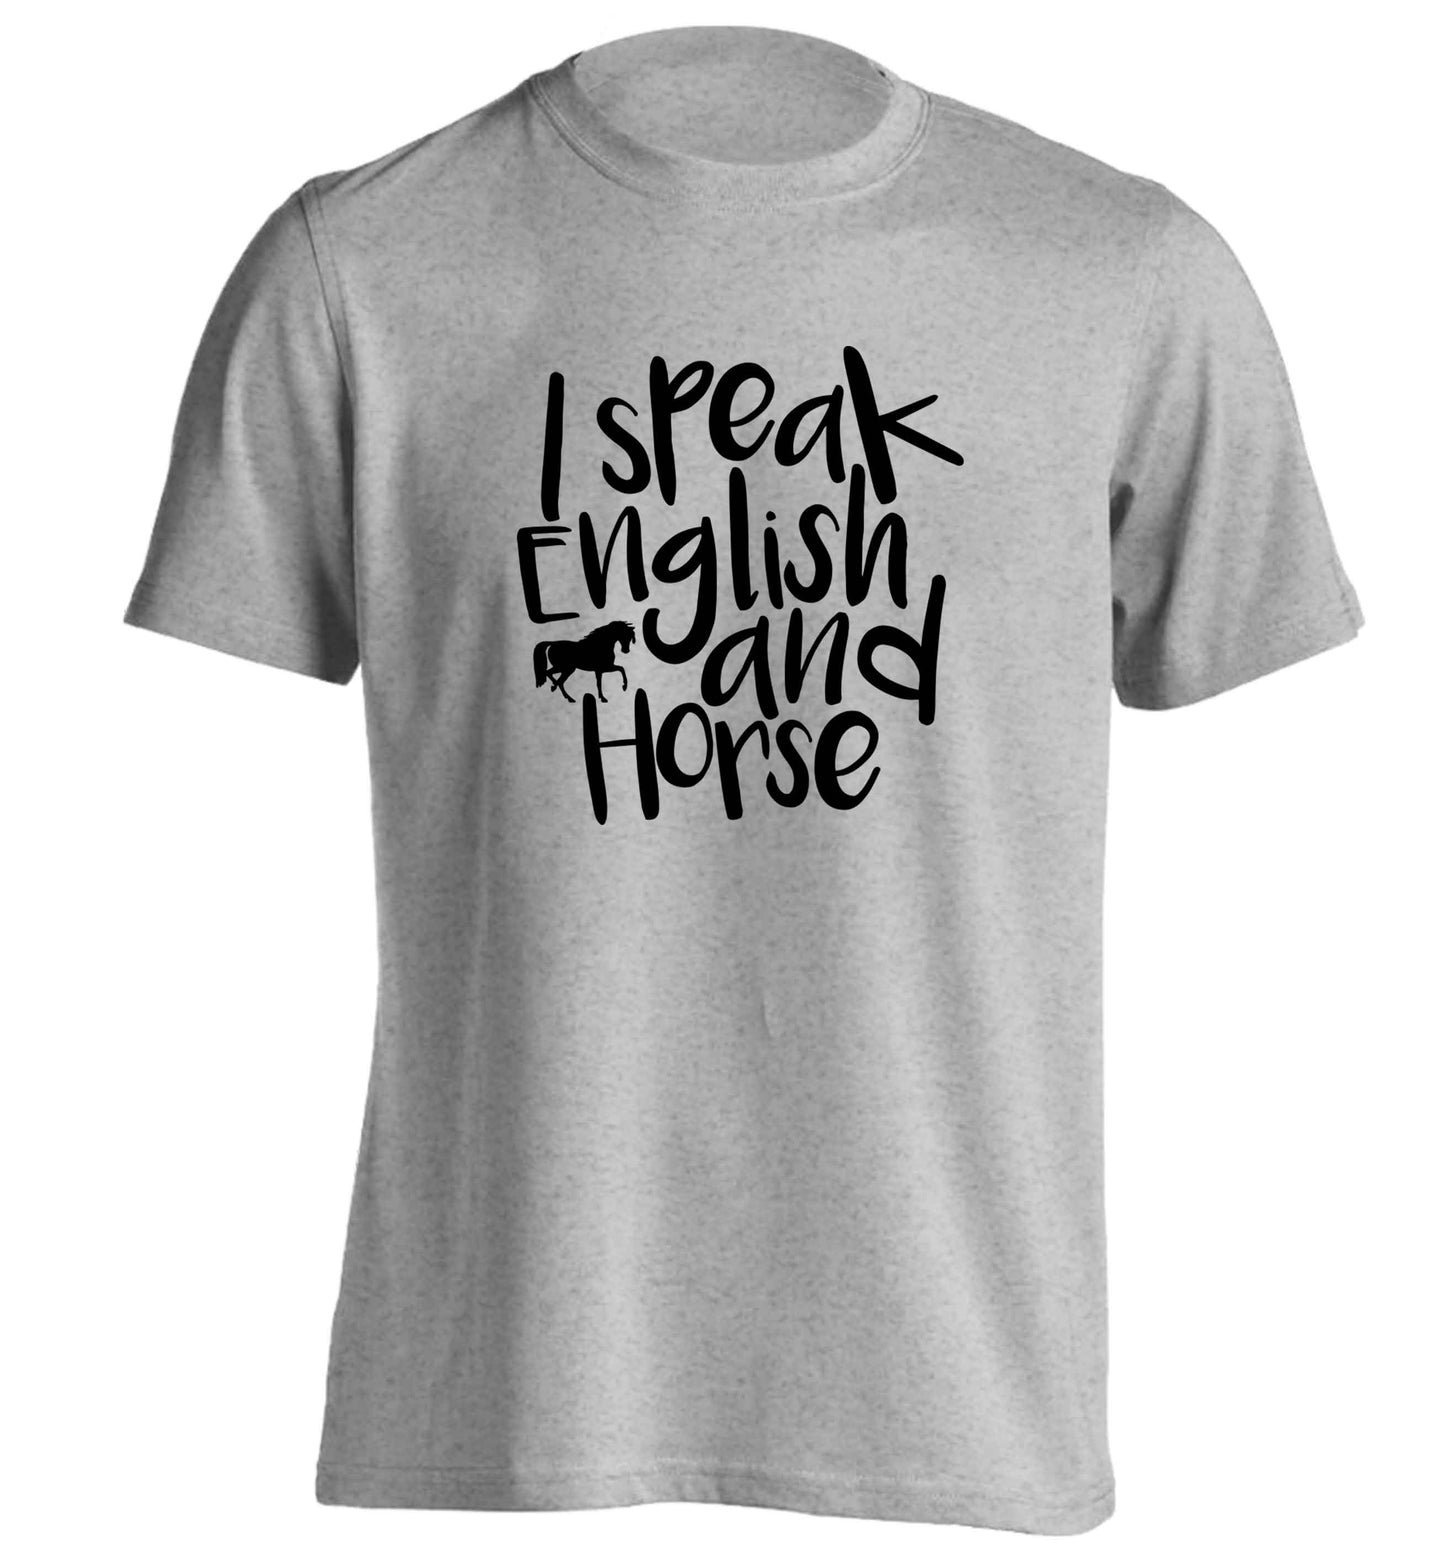 I speak English and horse adults unisex grey Tshirt 2XL